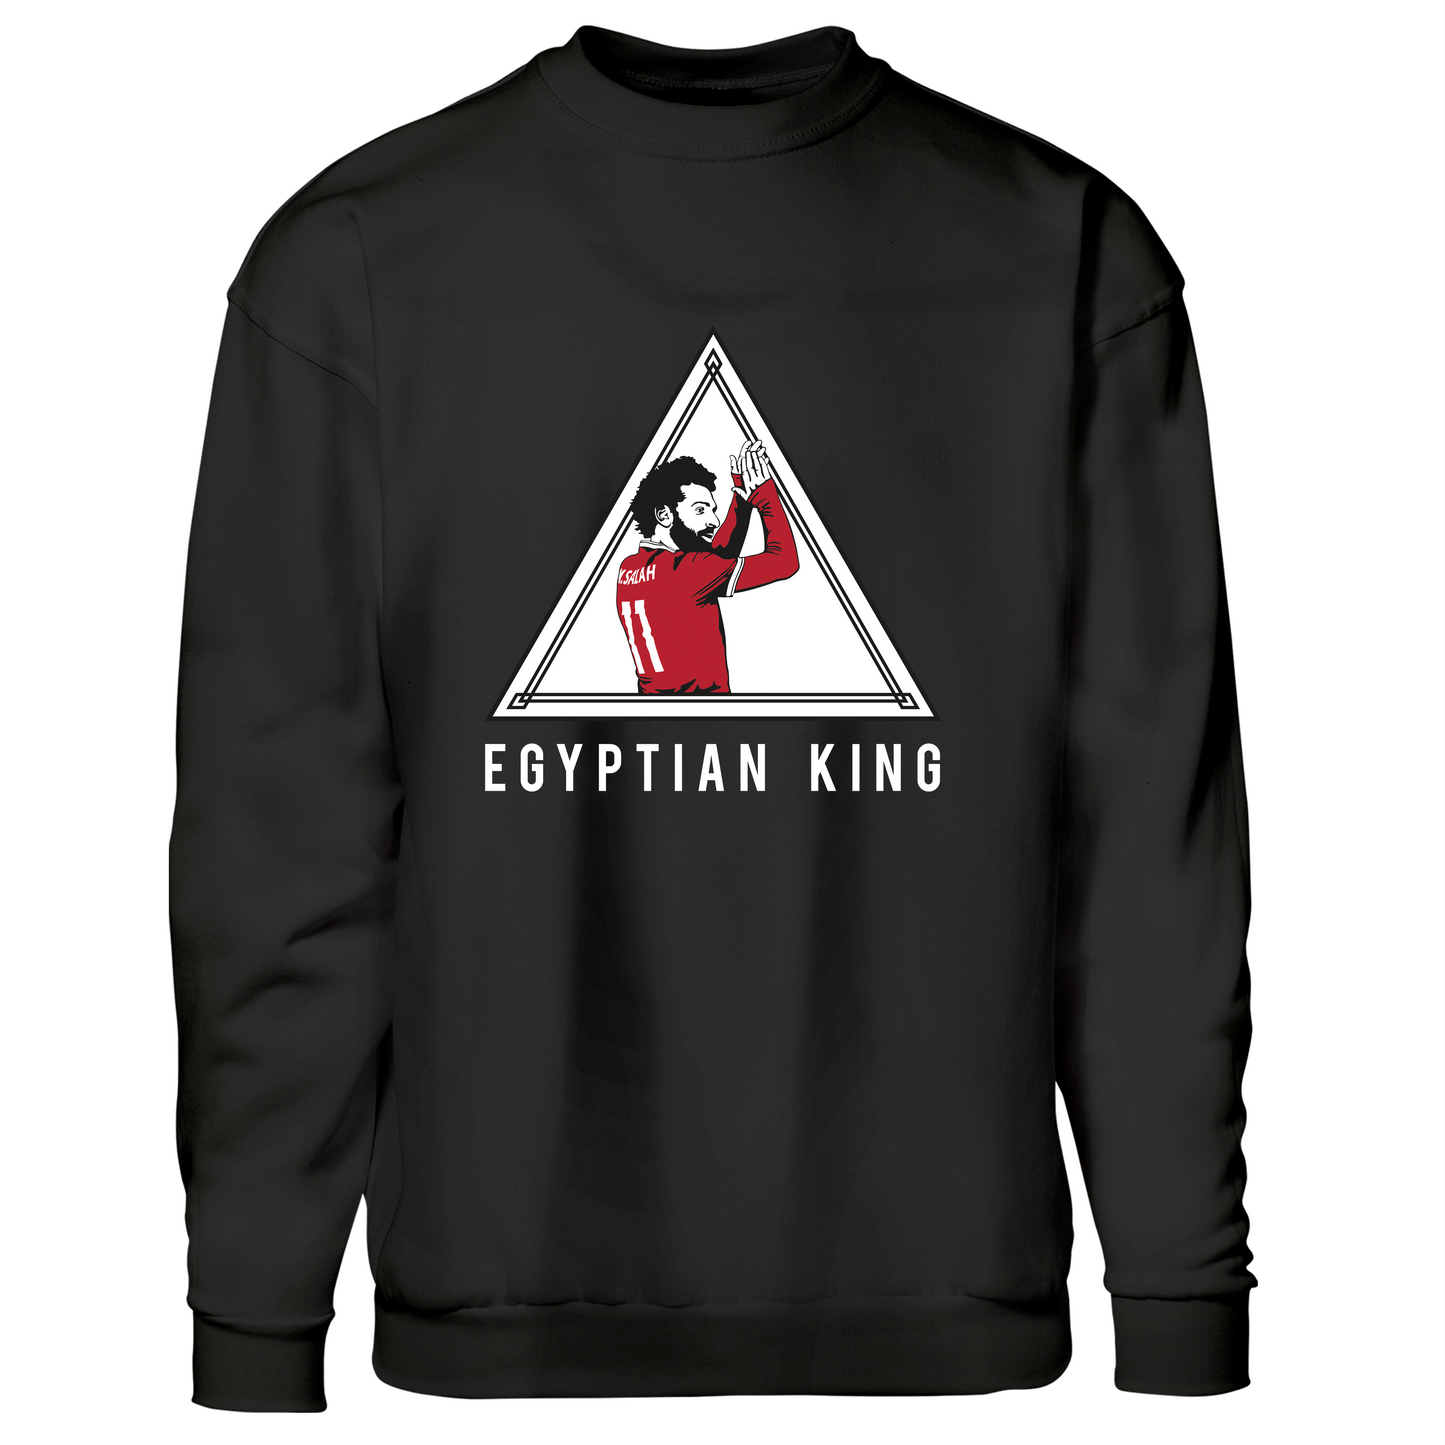 Egyptian King - Sweatshirt